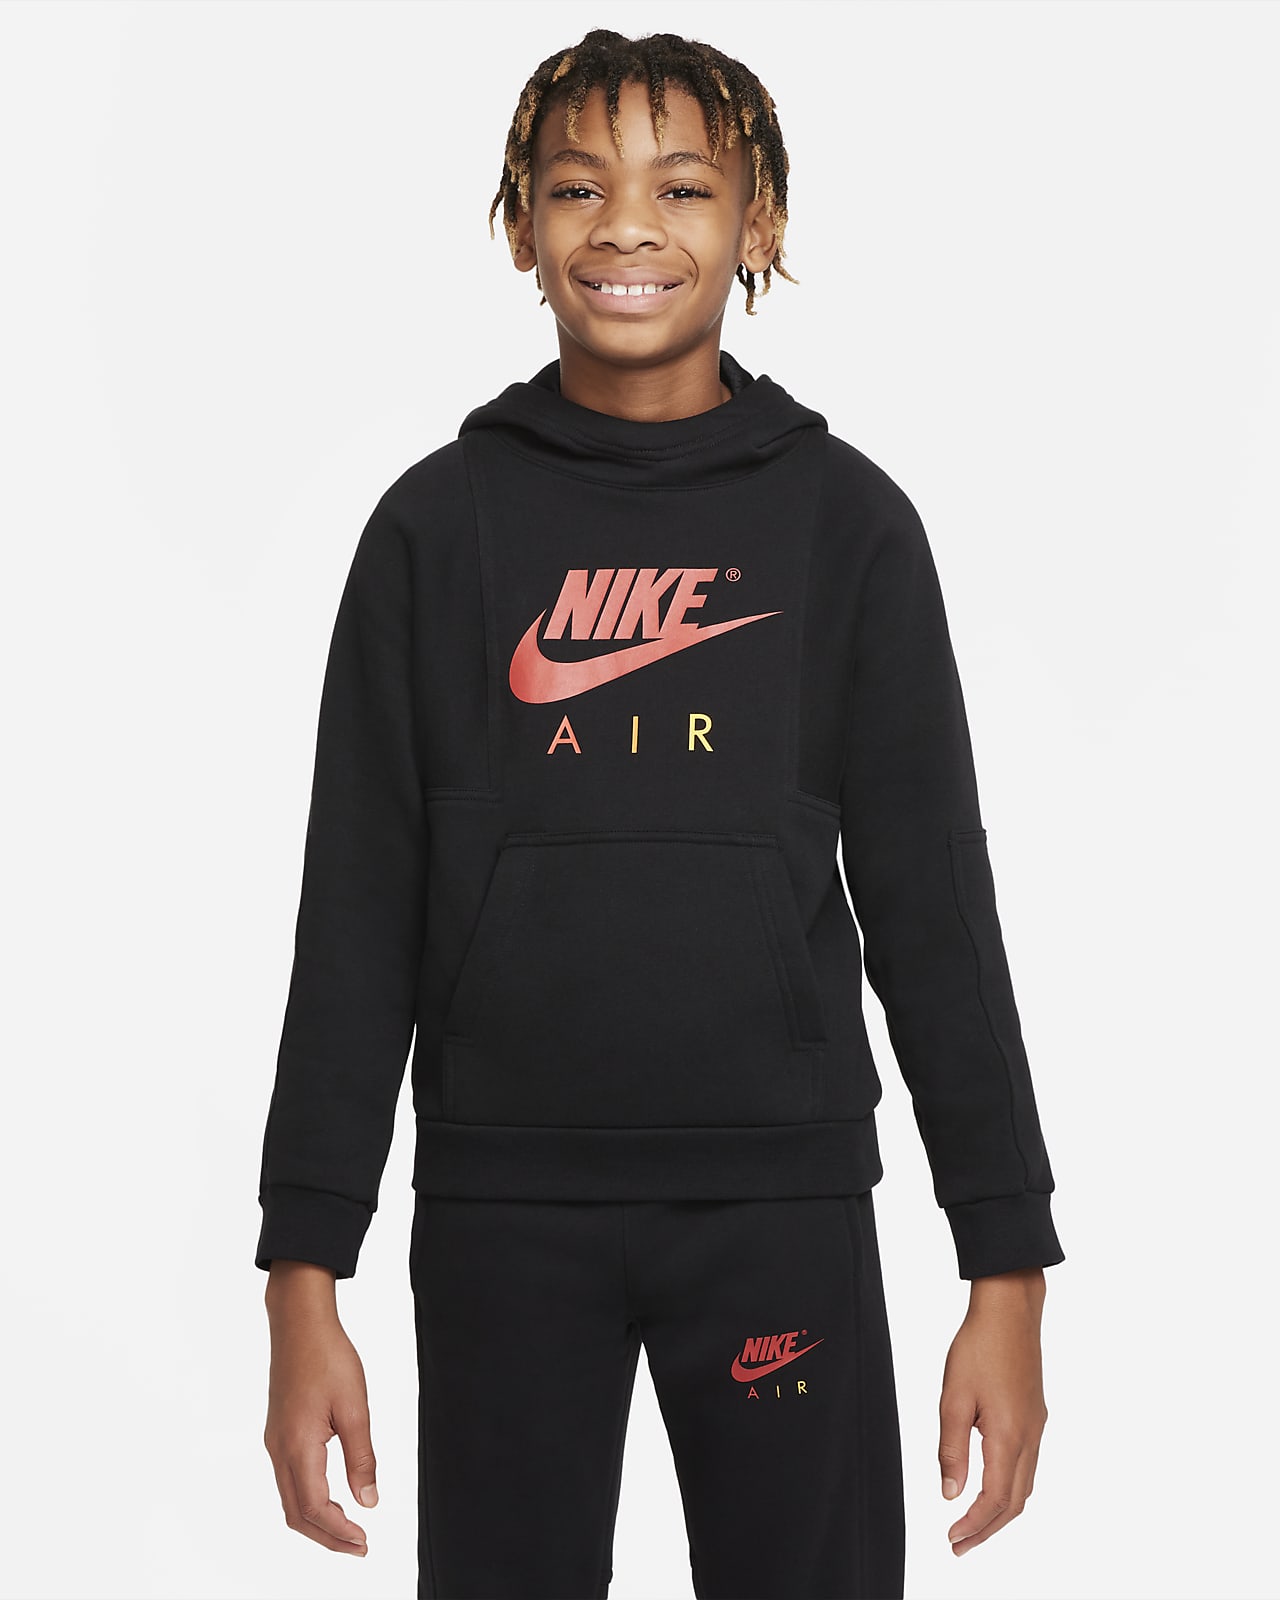 Μπλούζα με κουκούλα Nike Air για μεγάλα αγόρια